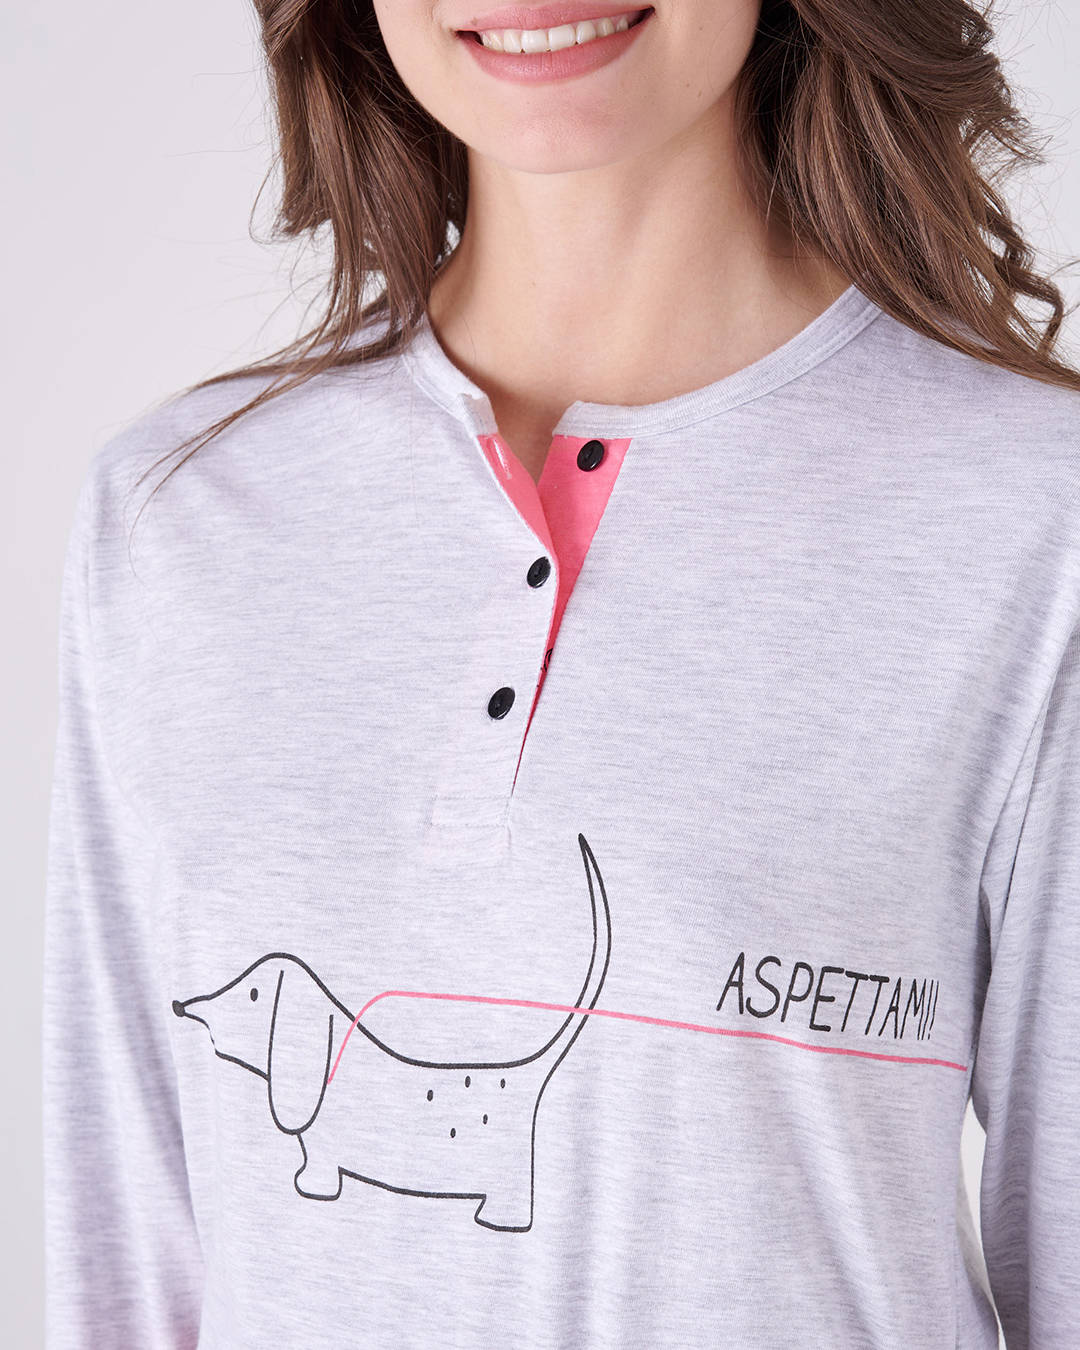 Dettaglio disegno cagnolino e frase "ASPETTAMI" sulla maglia del pigiama lungo da donna